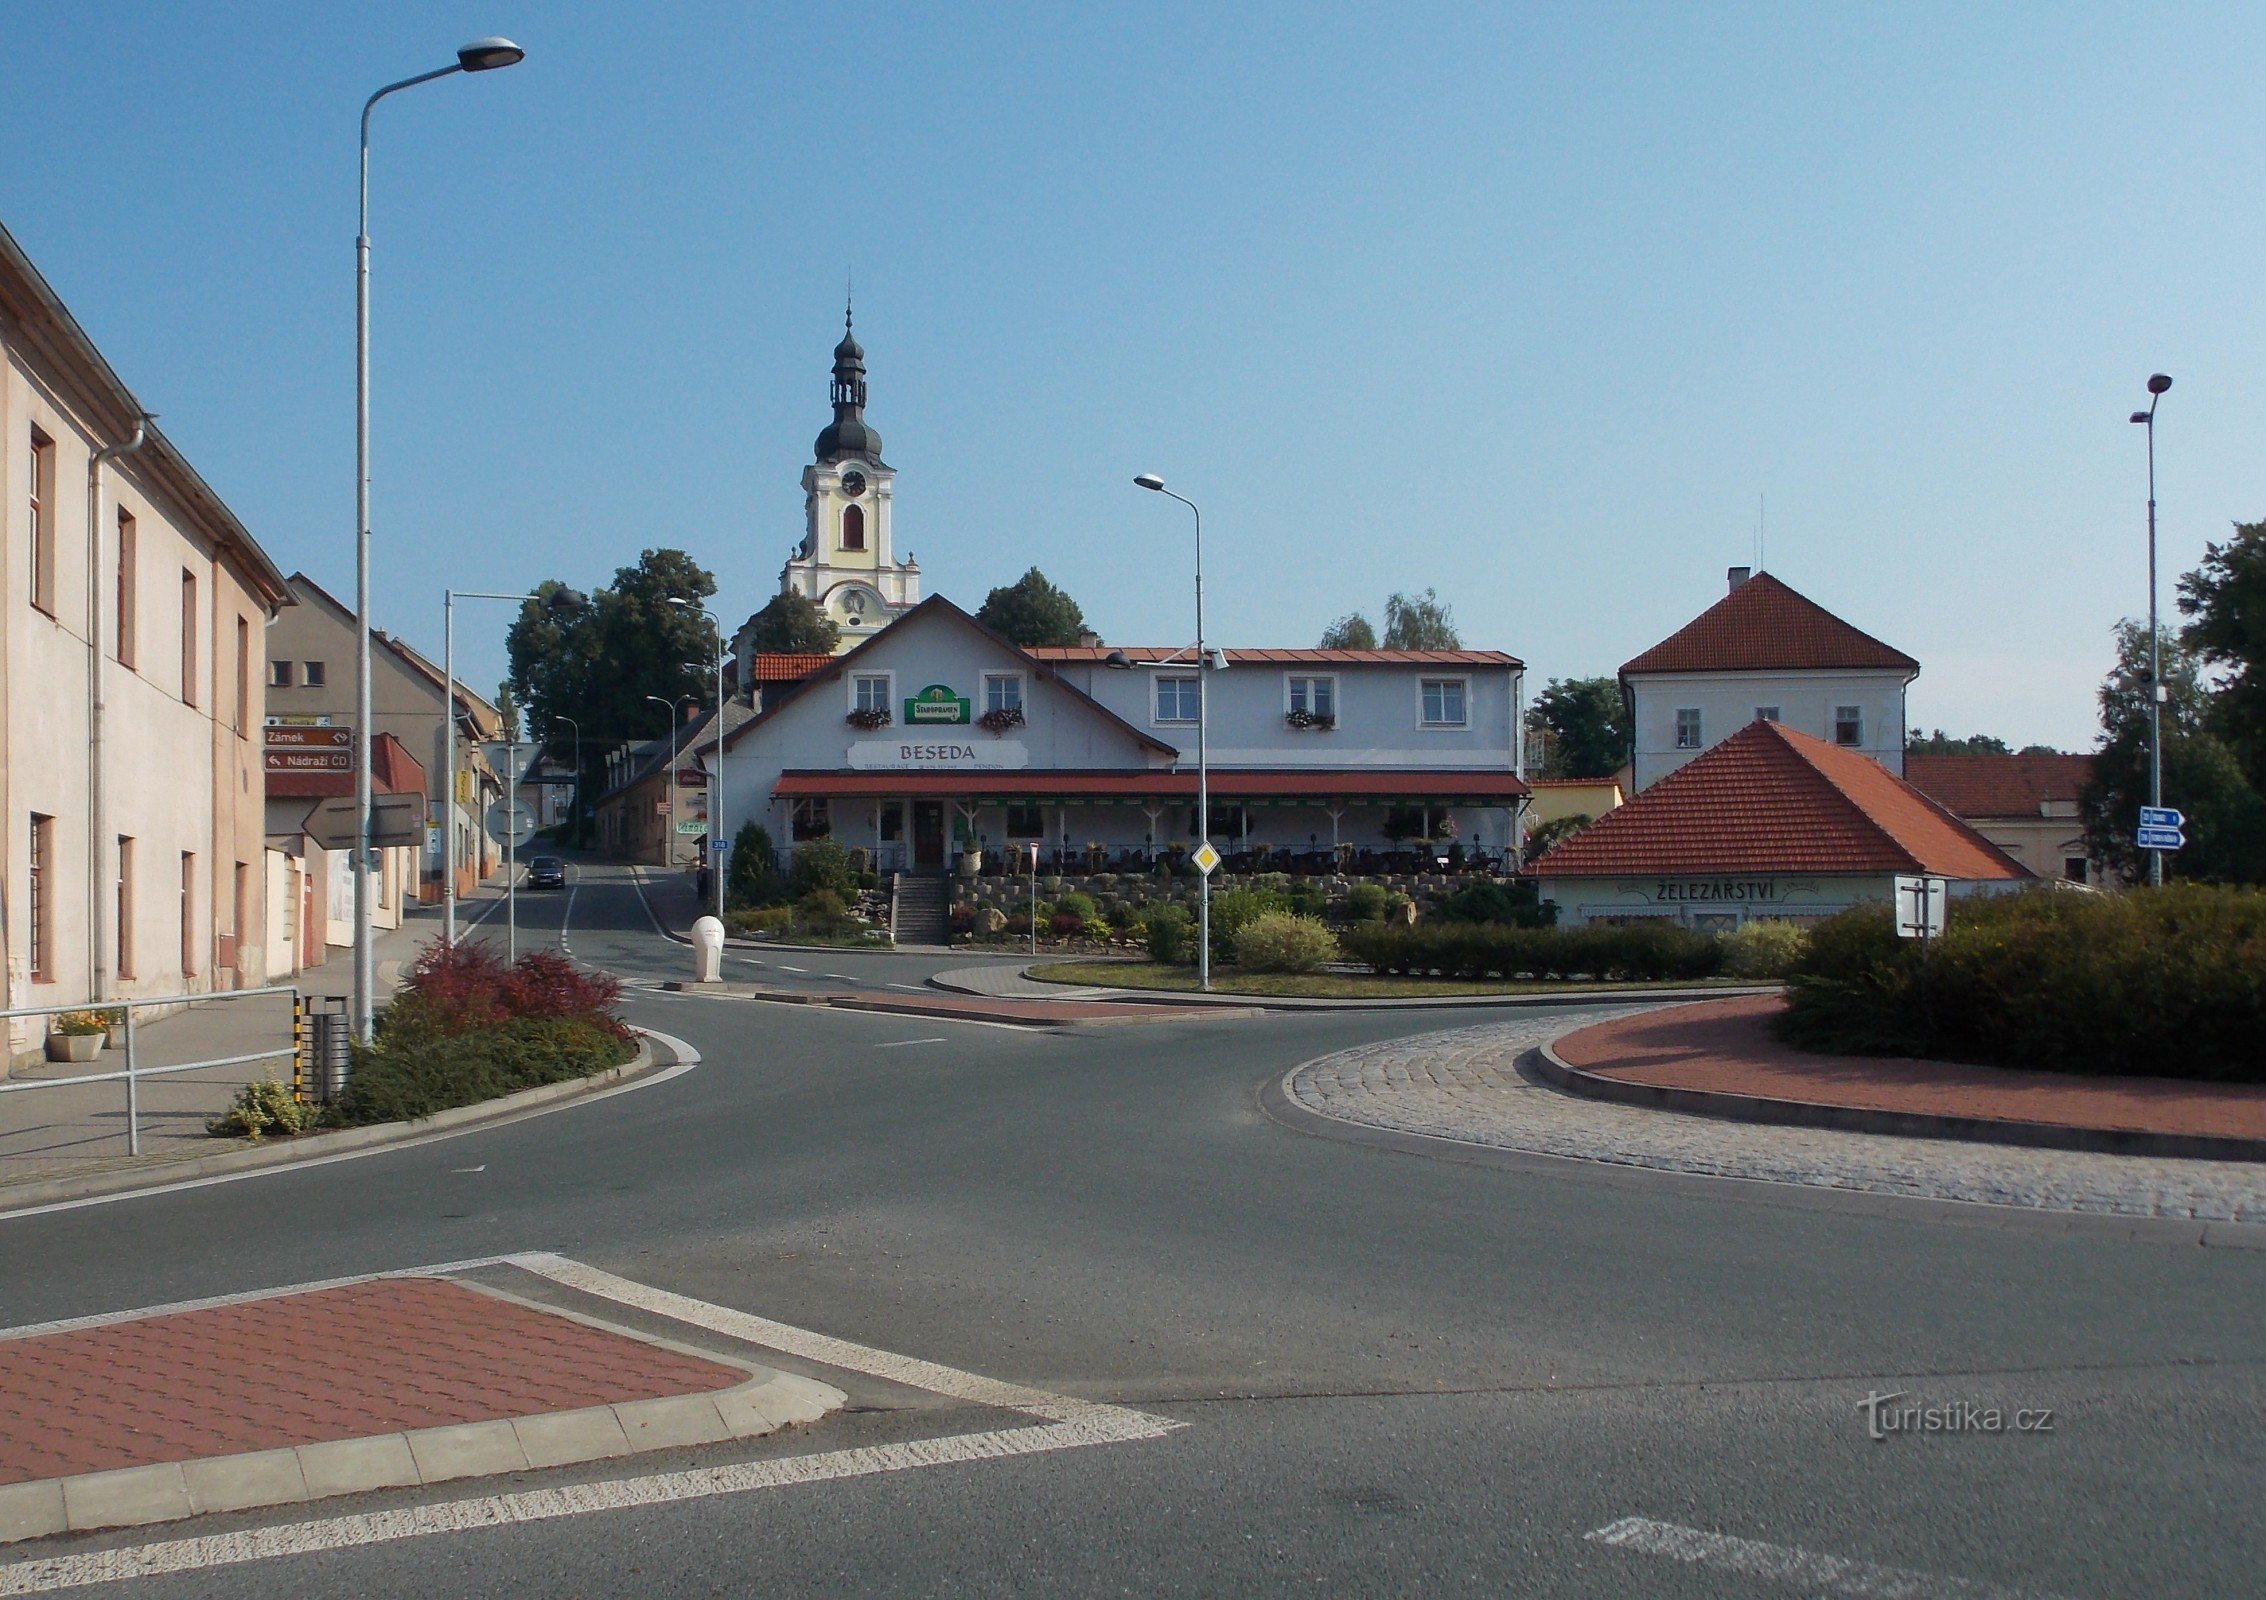 Đến thị trấn Častolovice